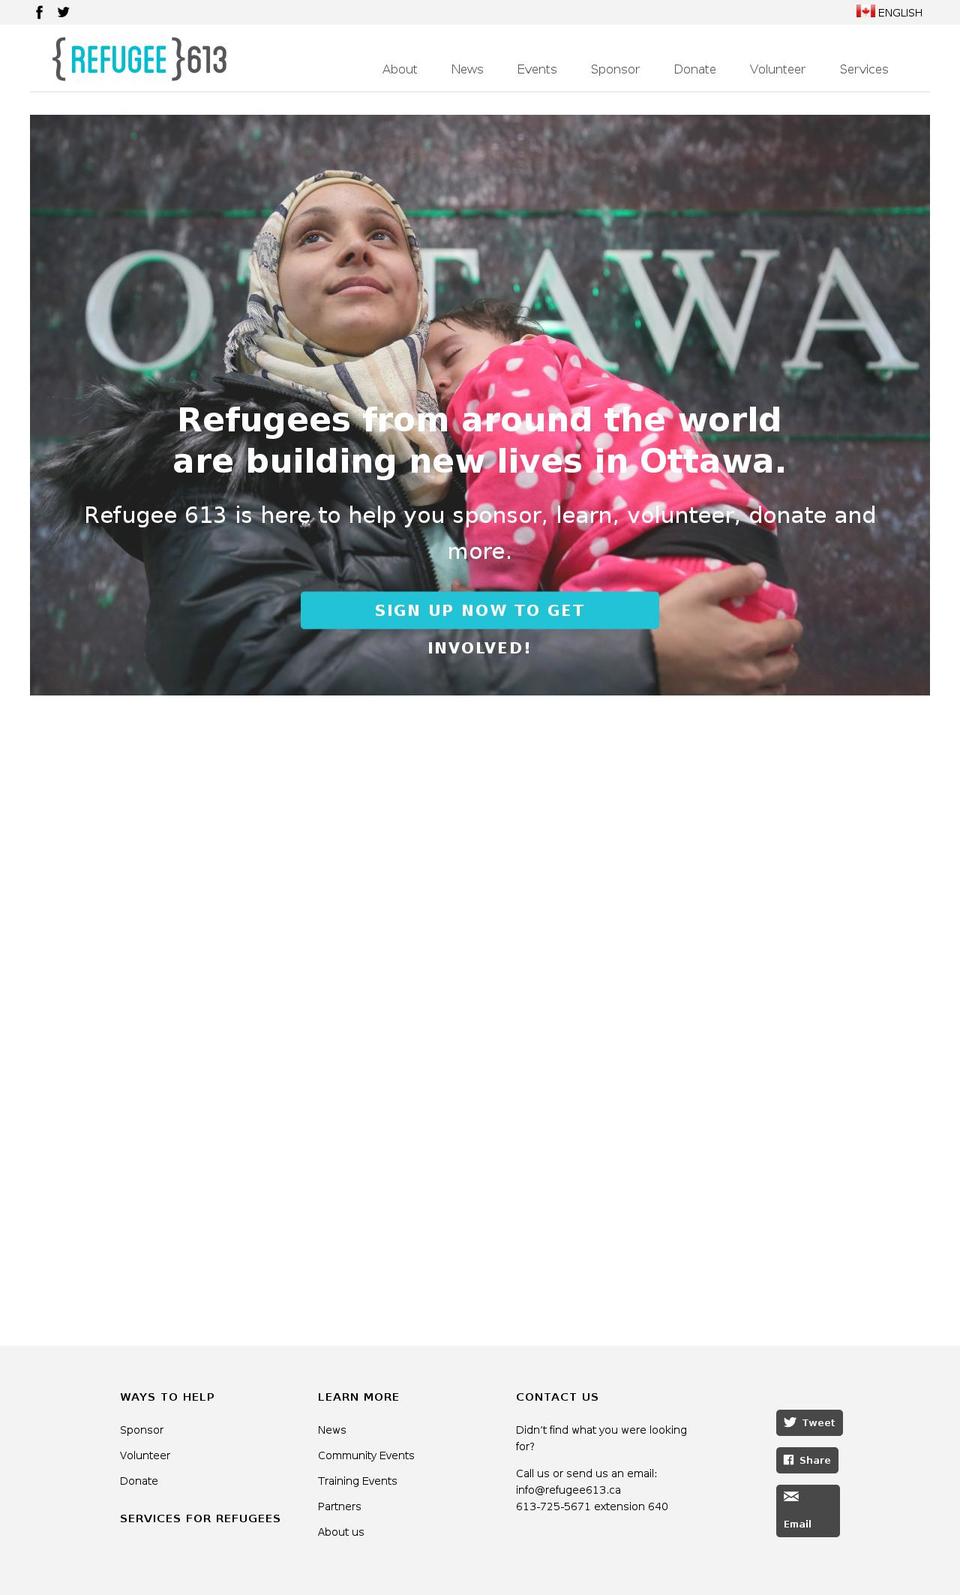 refugee613.ca shopify website screenshot